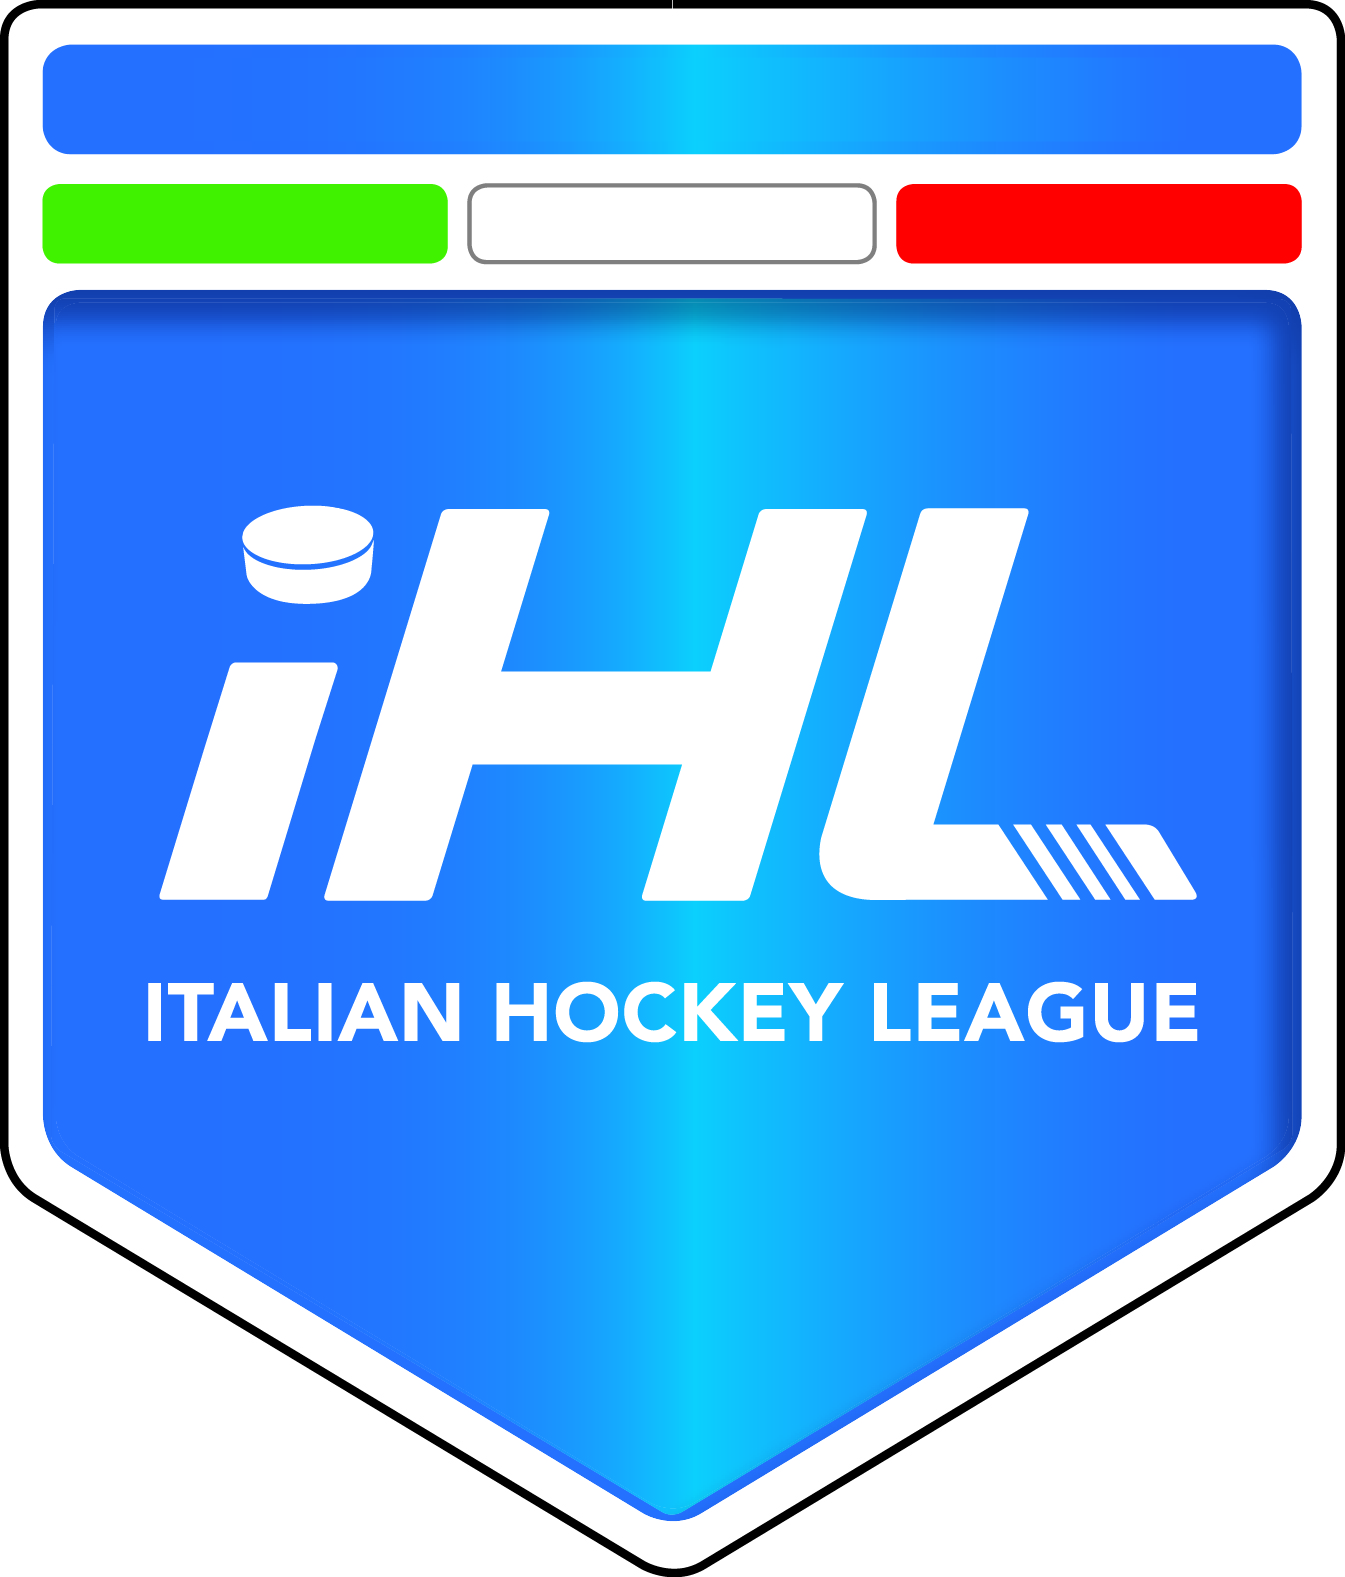 Italian Hockey league logo